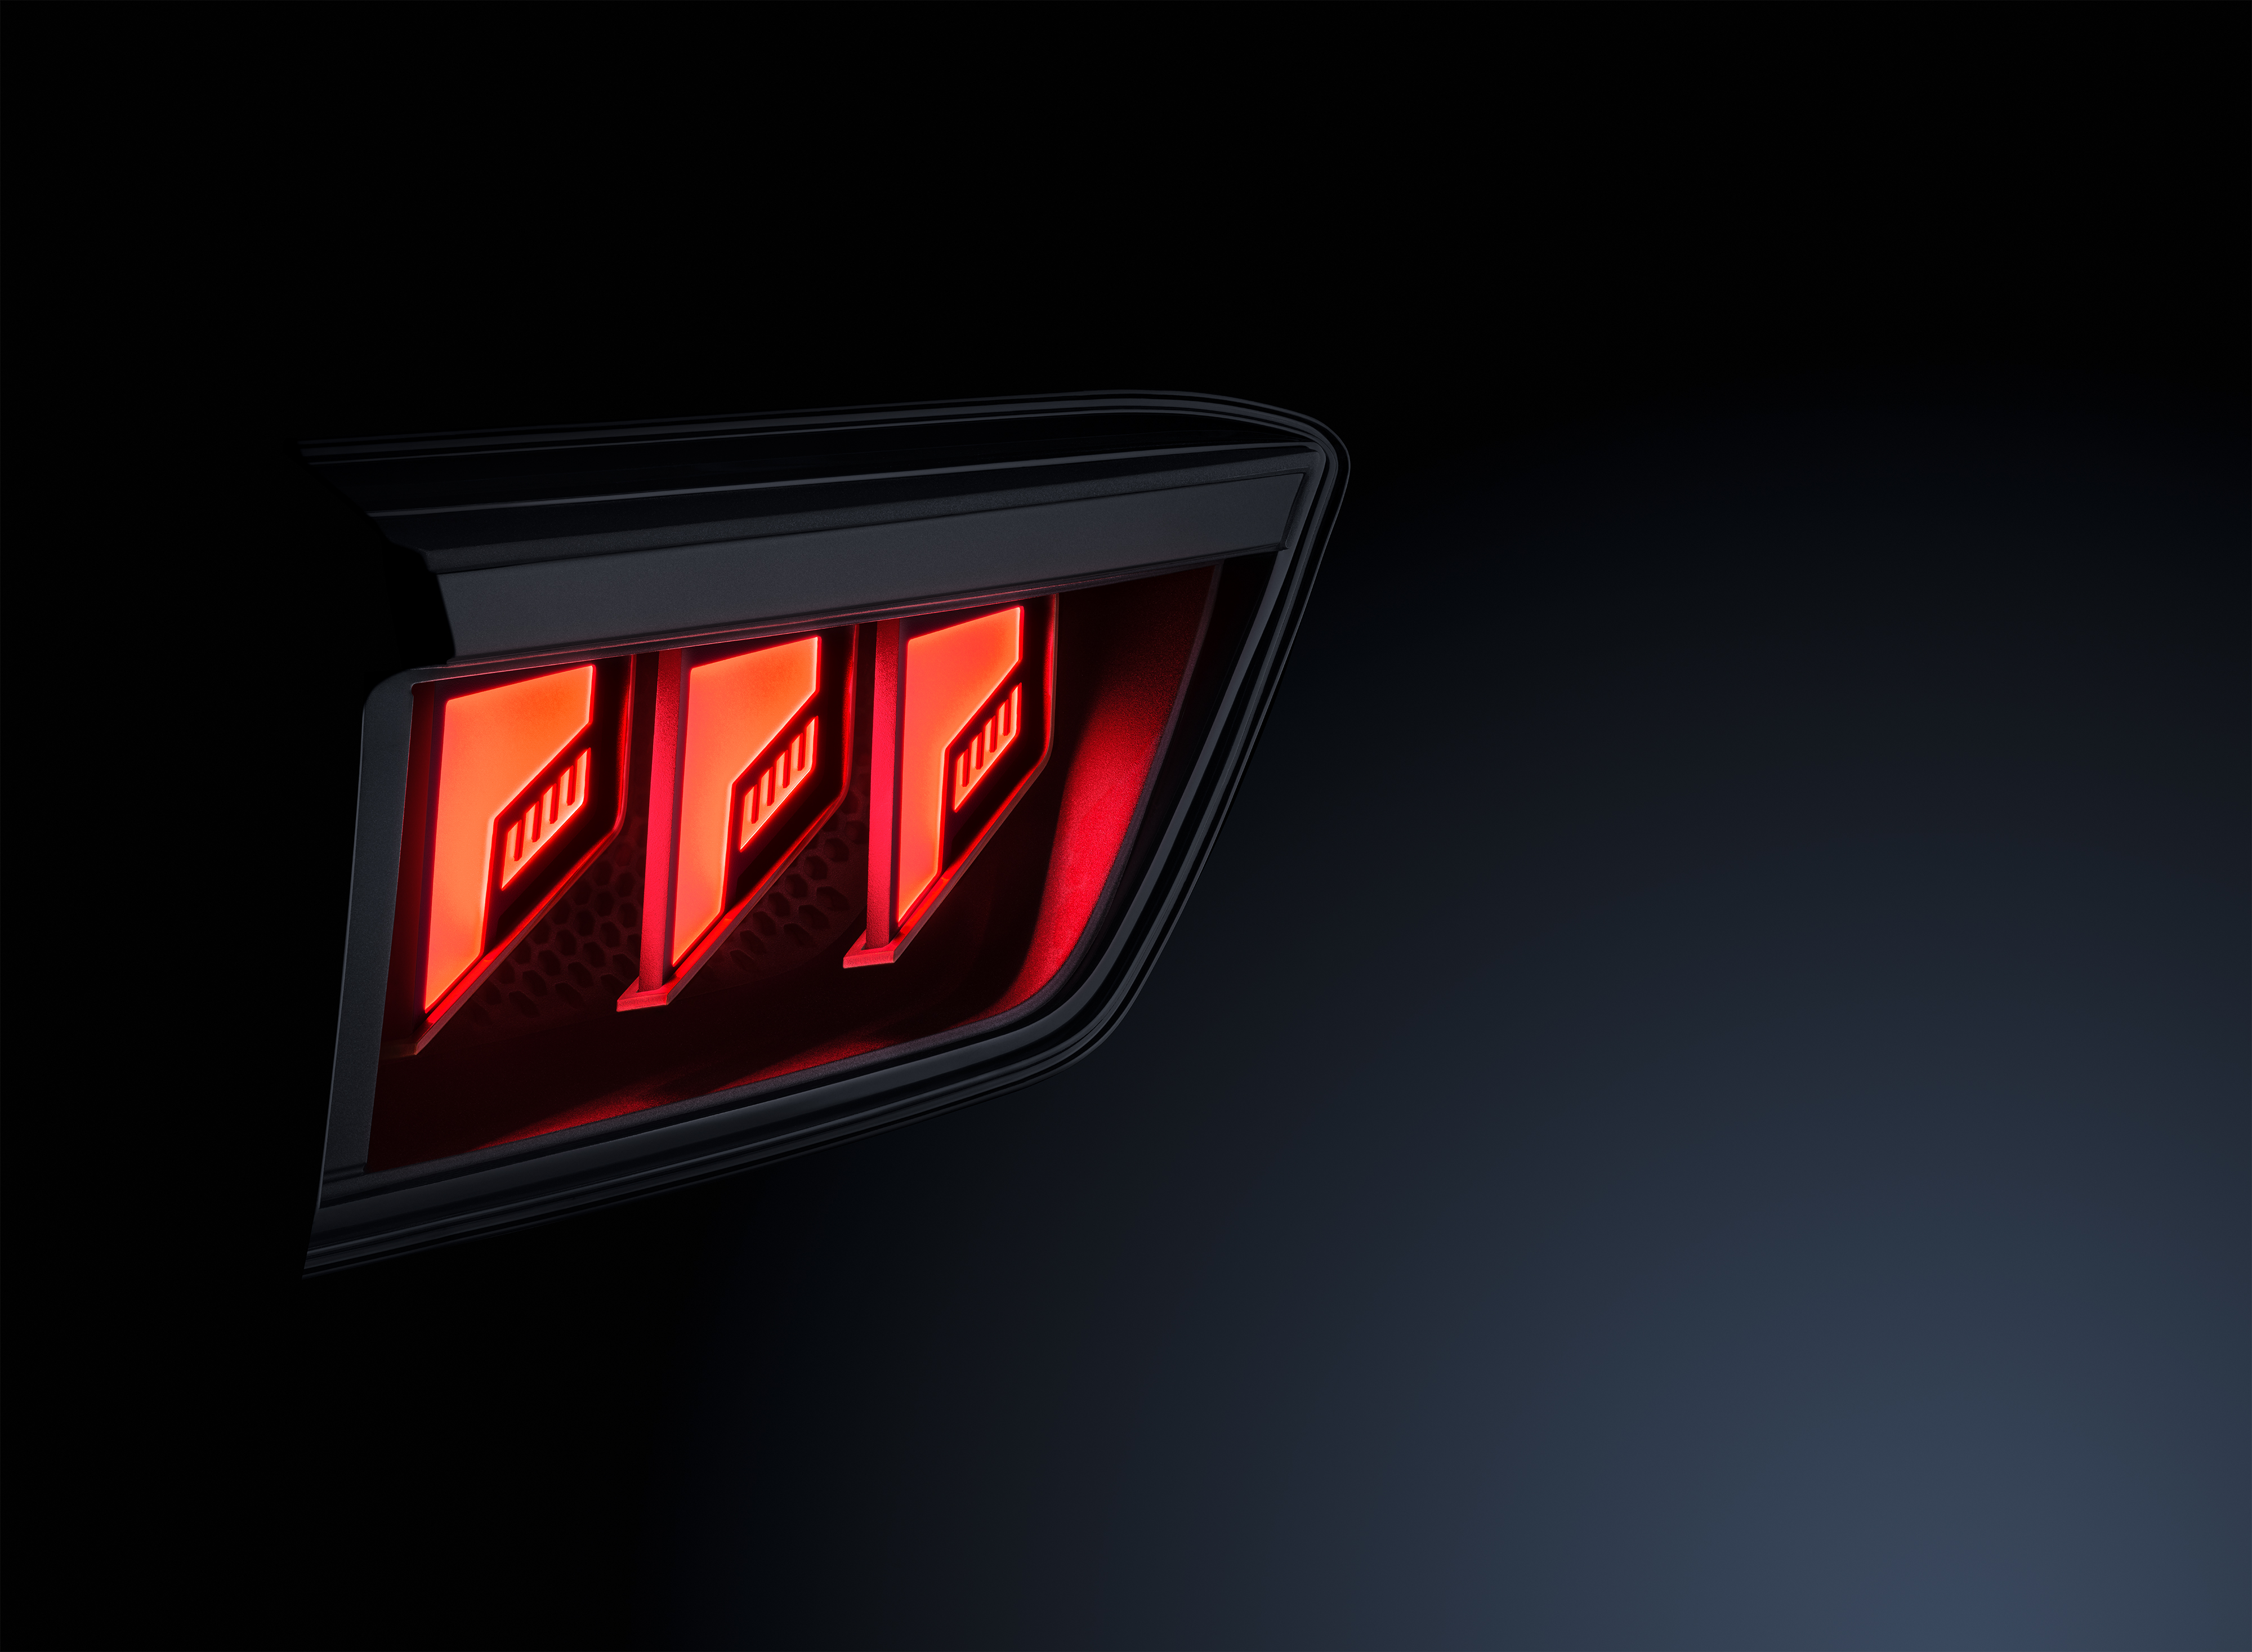 Технология задних комбинированных фонарей в лучшем виде: HELLA получила первый заказ клиента на инновационную концепцию FlatLight